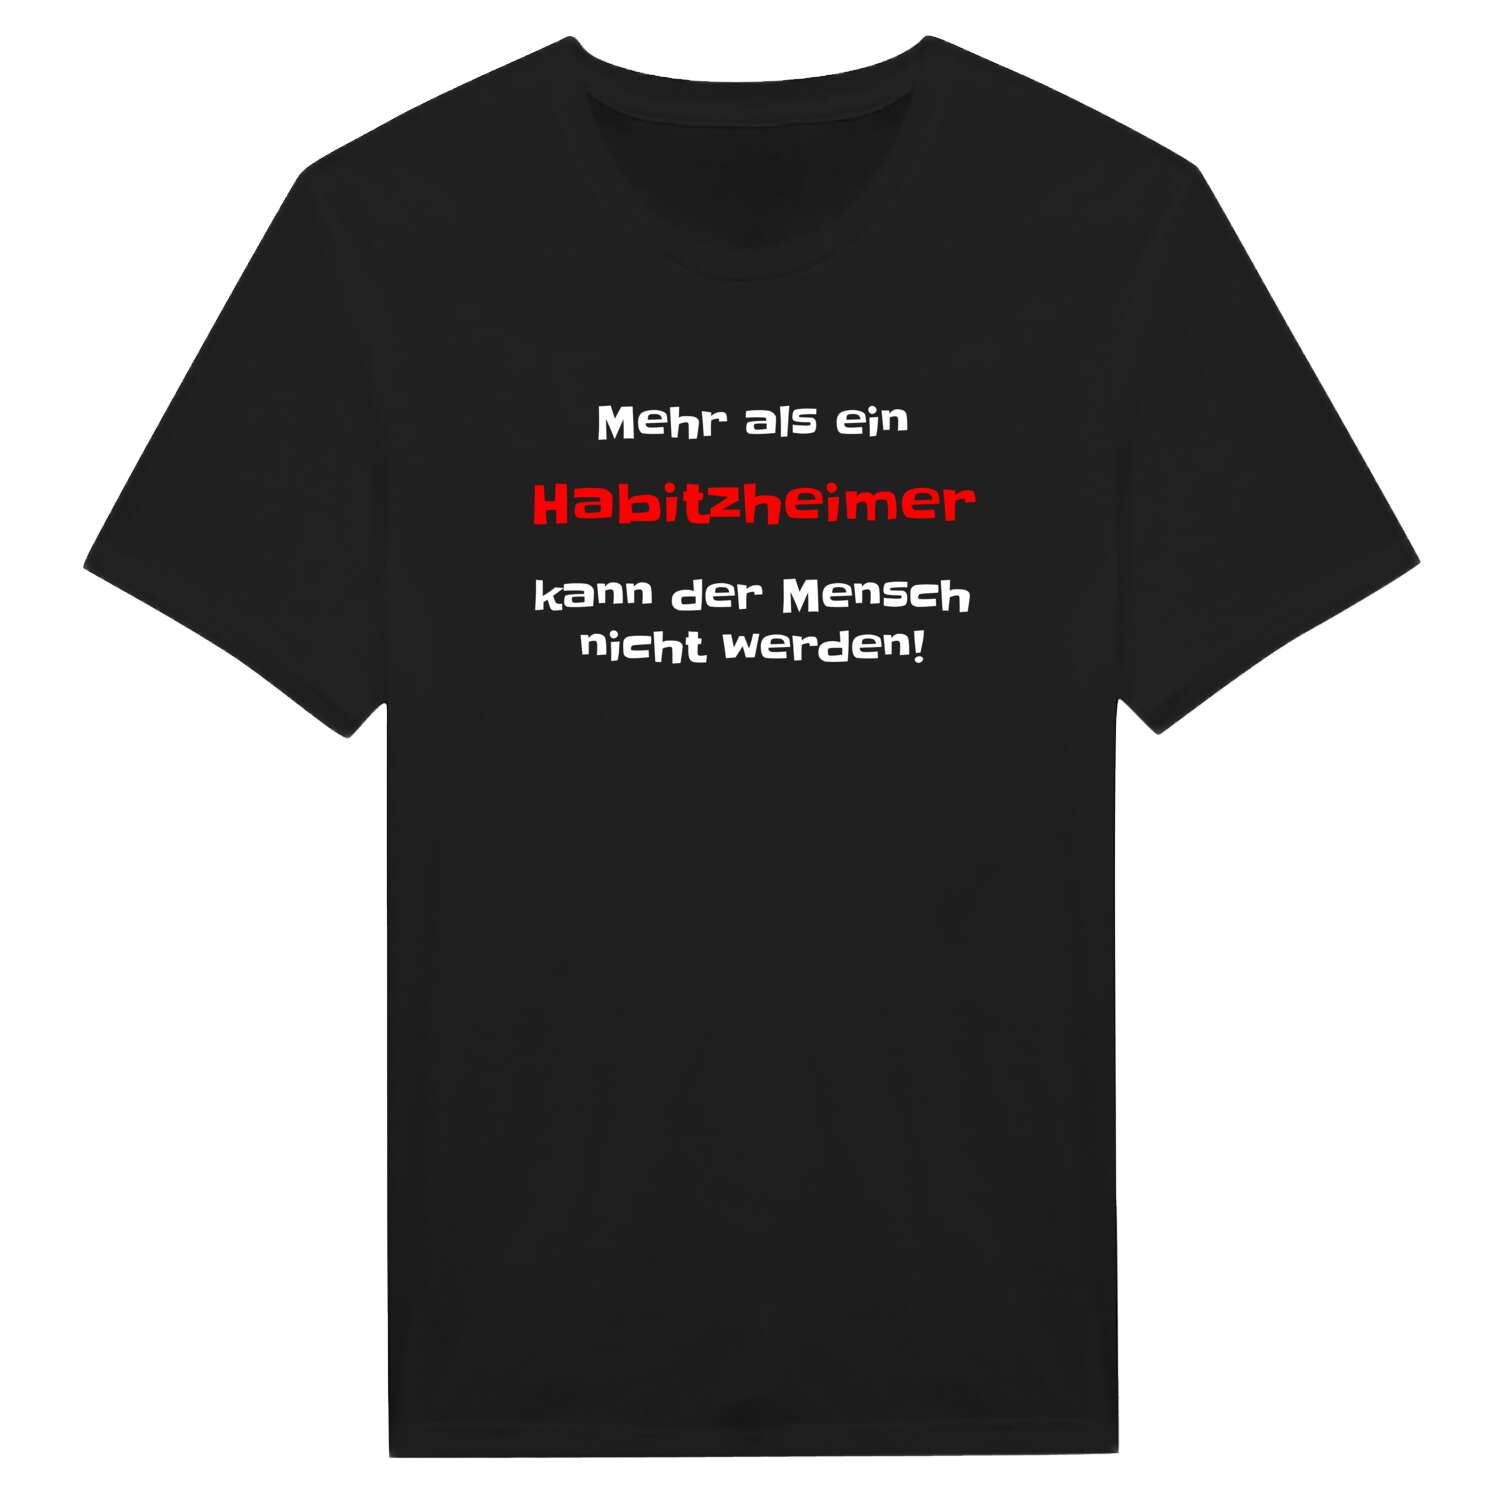 Habitzheim T-Shirt »Mehr als ein«